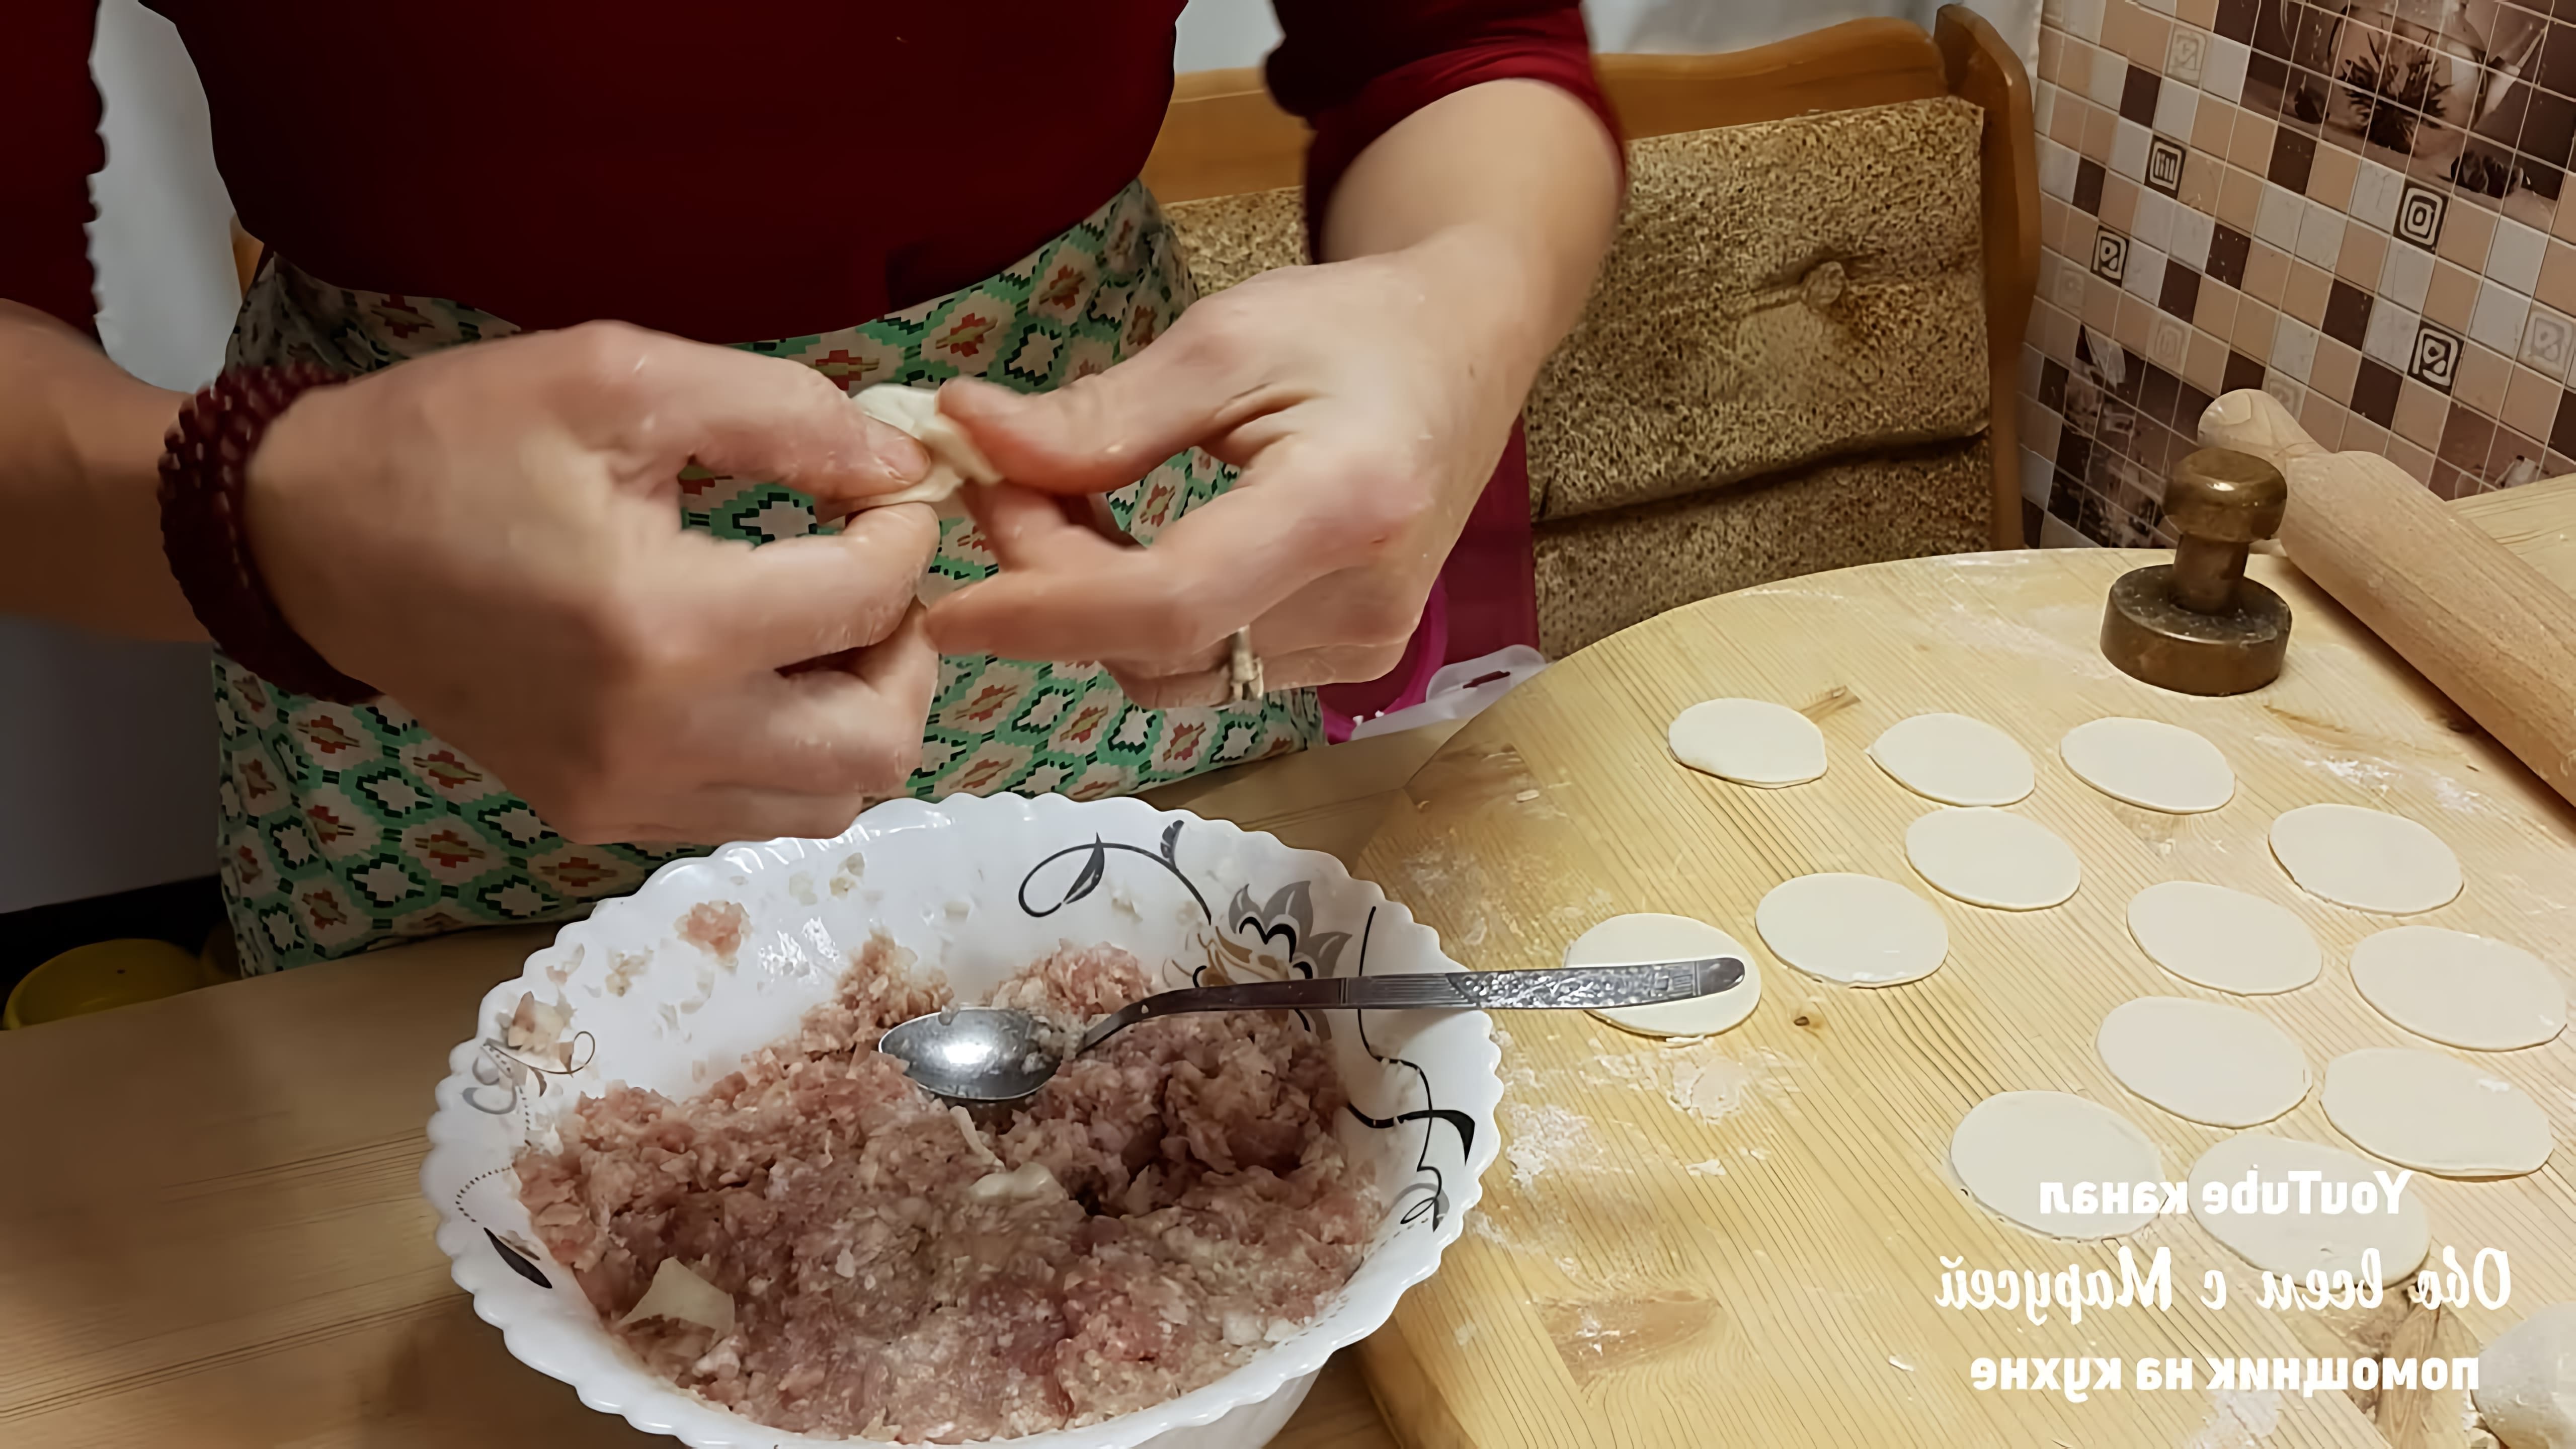 В этом видео демонстрируется процесс приготовления домашних пельменей с мясом и капустной начинкой